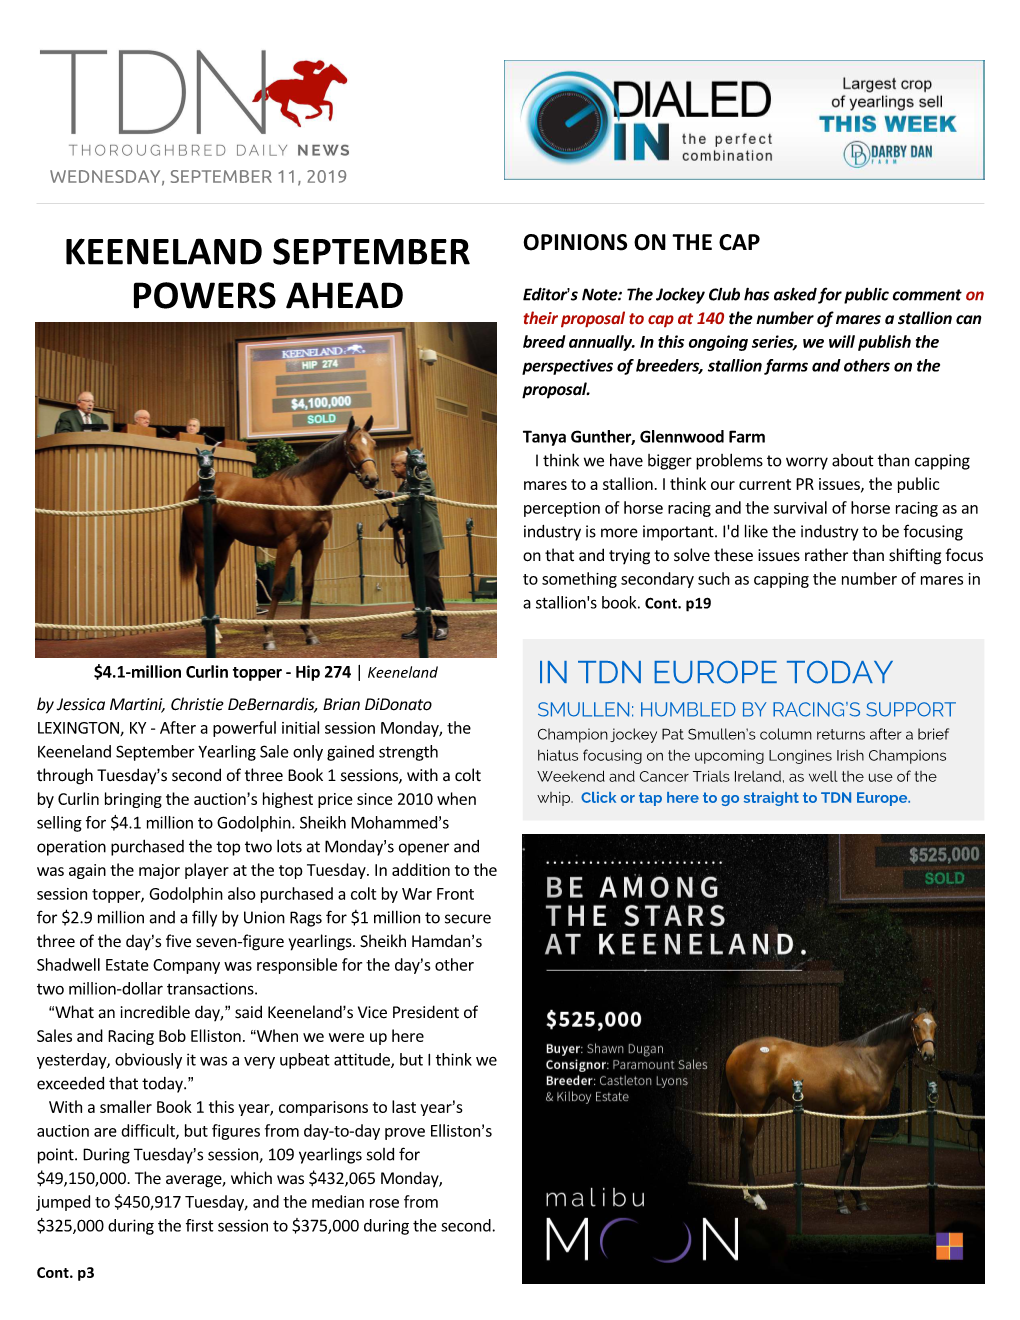 Keeneland September Powers Ahead